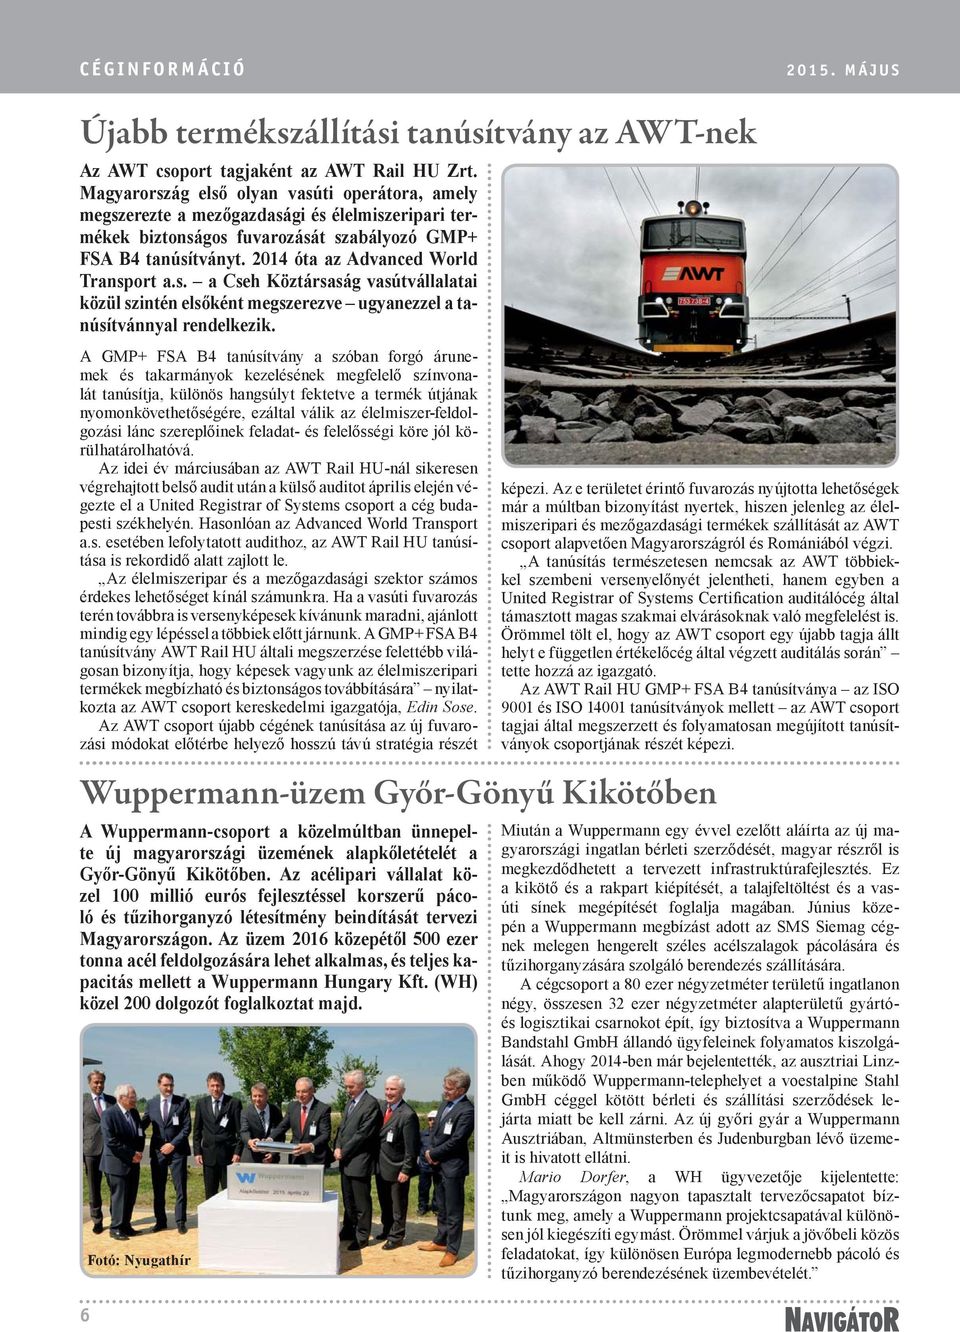 2014 óta az Advanced World Transport a.s. a Cseh Köztársaság vasútvállalatai közül szintén elsőként megszerezve ugyanezzel a tanúsítvánnyal rendelkezik.